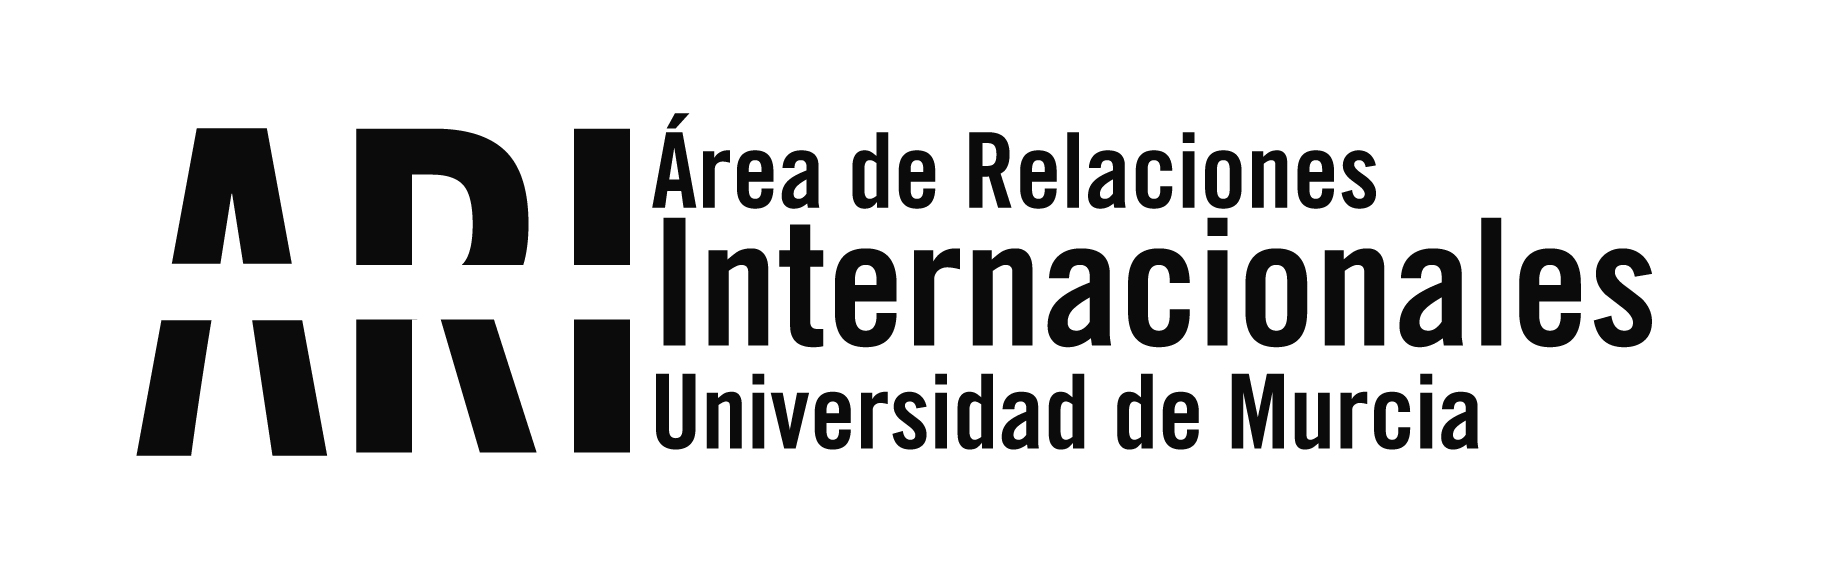 20180913 Sesión Orientacion Lationamerica - Eventos - Área de Relaciones Internacionales